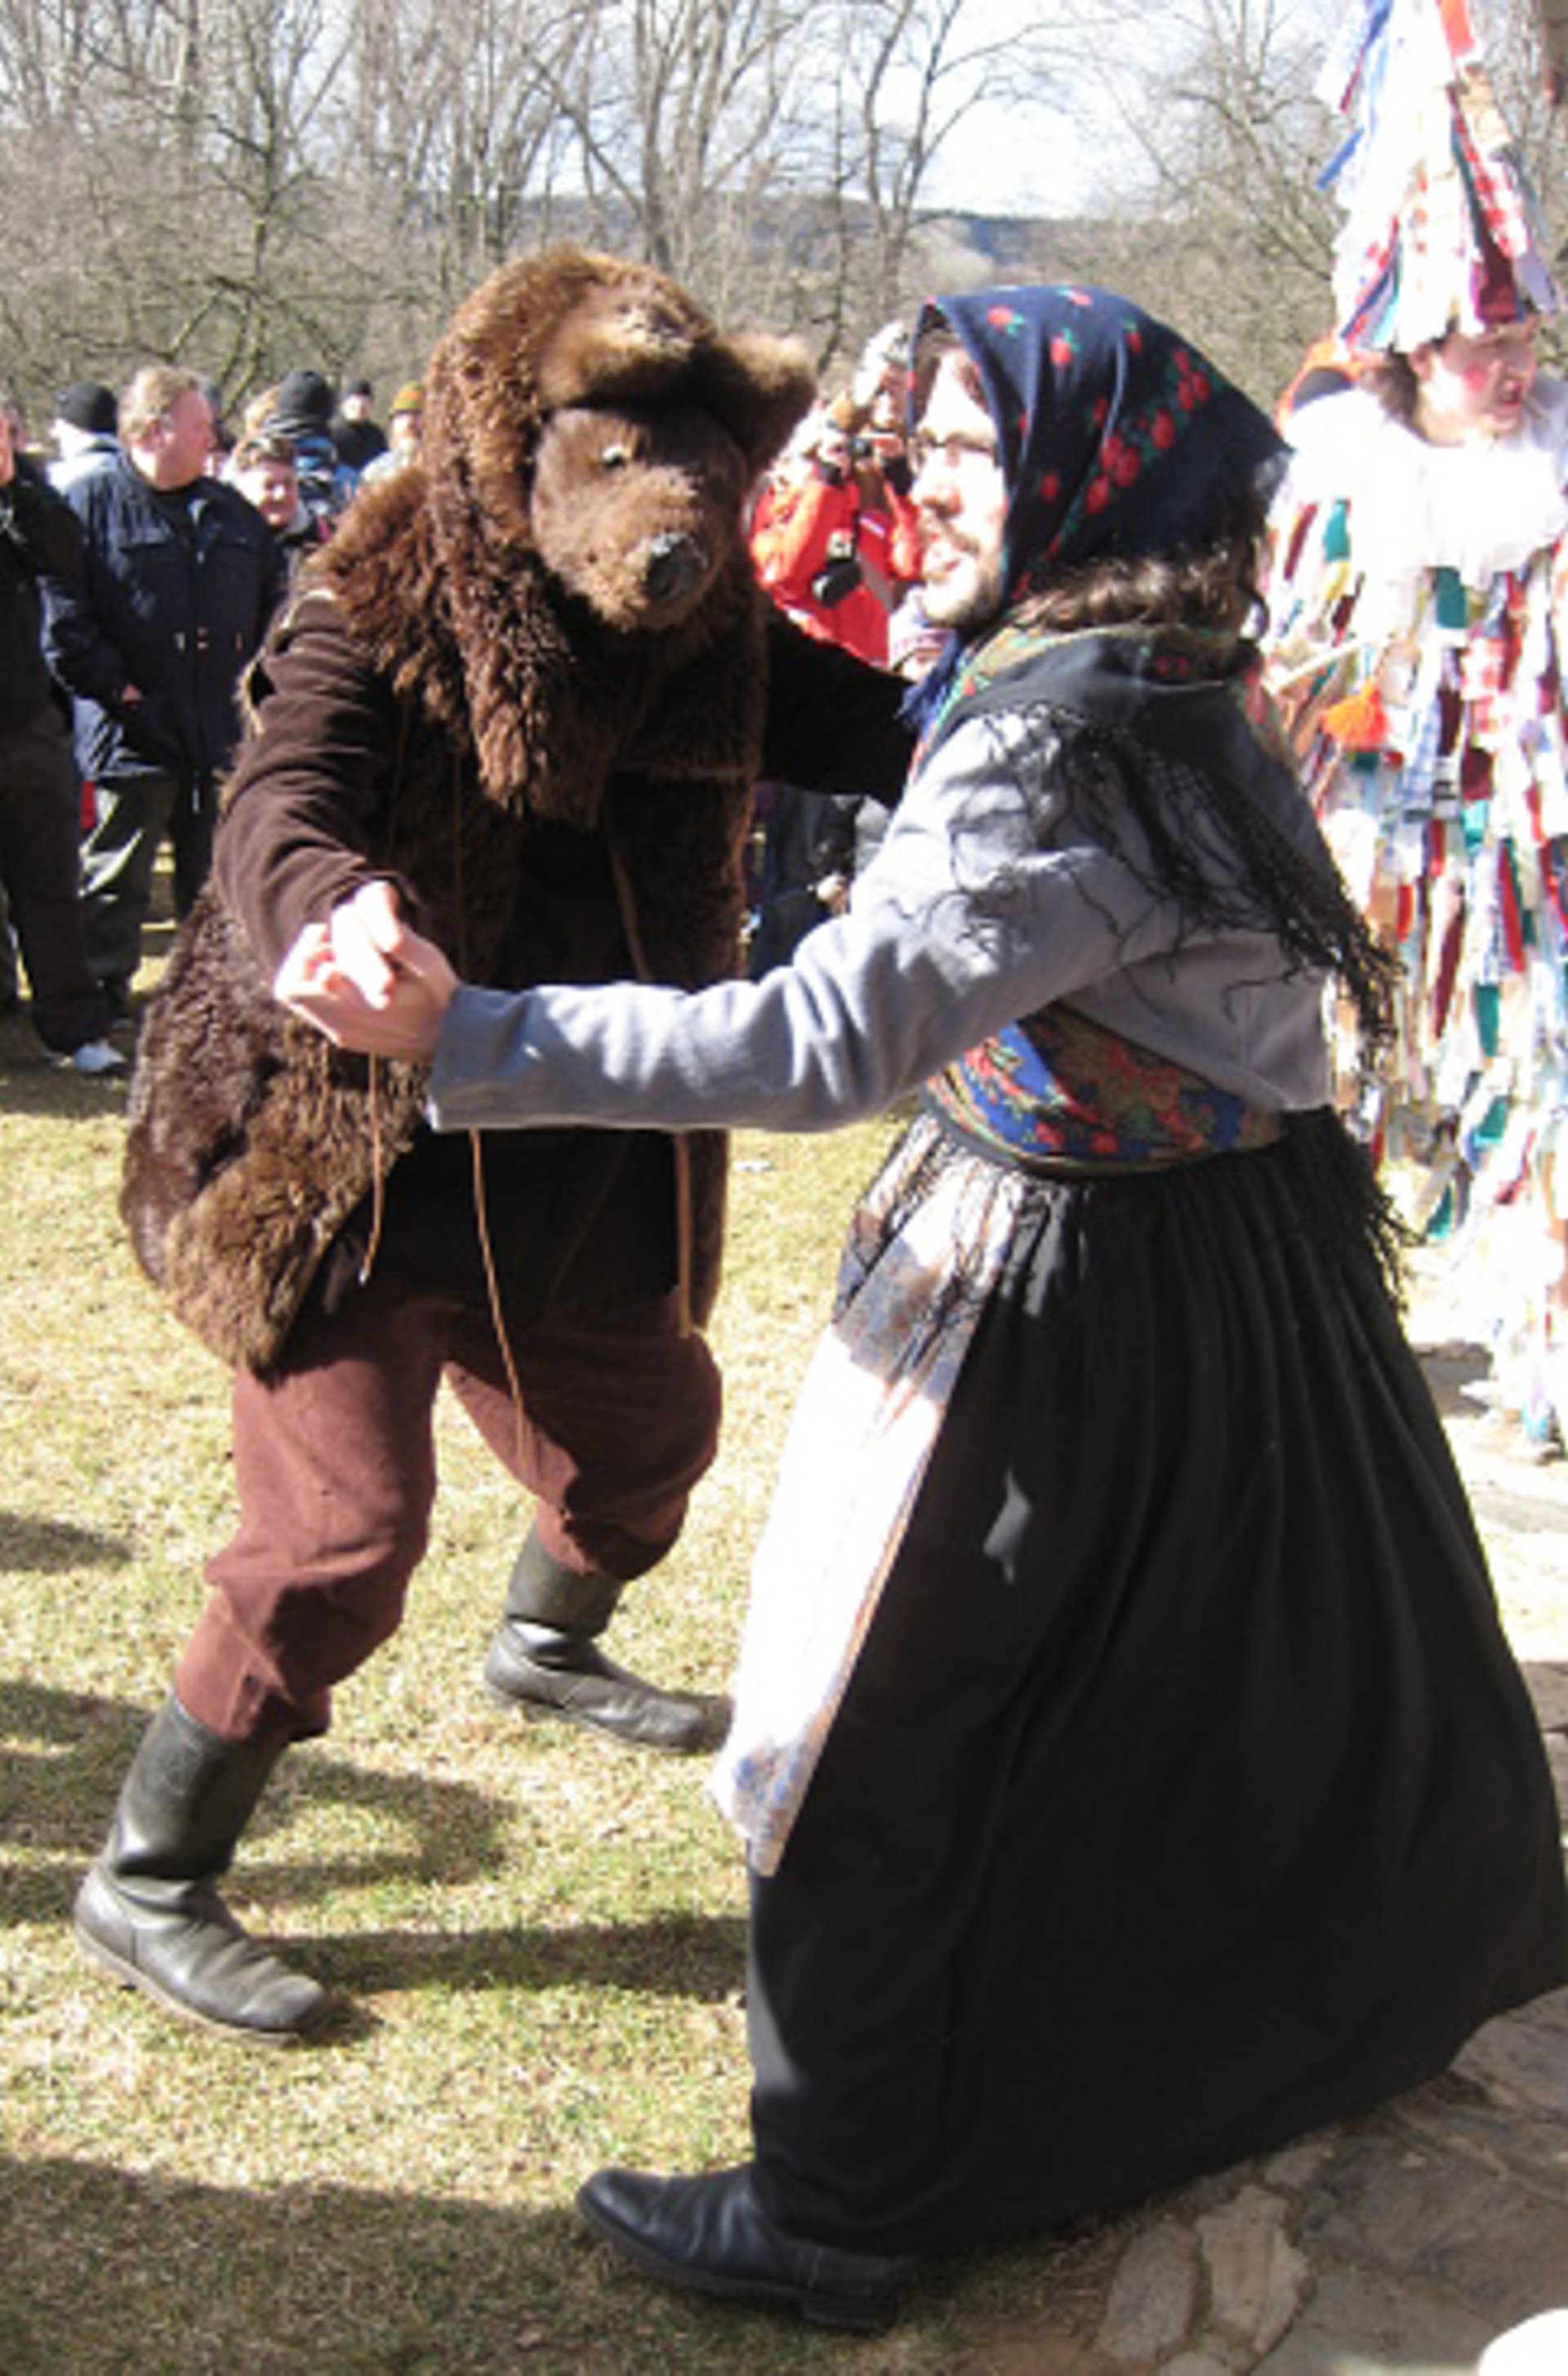 Masopustní masky: medvěd patří k nejstarším i nejčastěji užívaným masopustním maskám, kam medvěd přišel, ženy s ním musely jít tancovat, i když se při tanci choval velmi lascivně a mnohé porazil a vyválet se s nim i ve sněhu